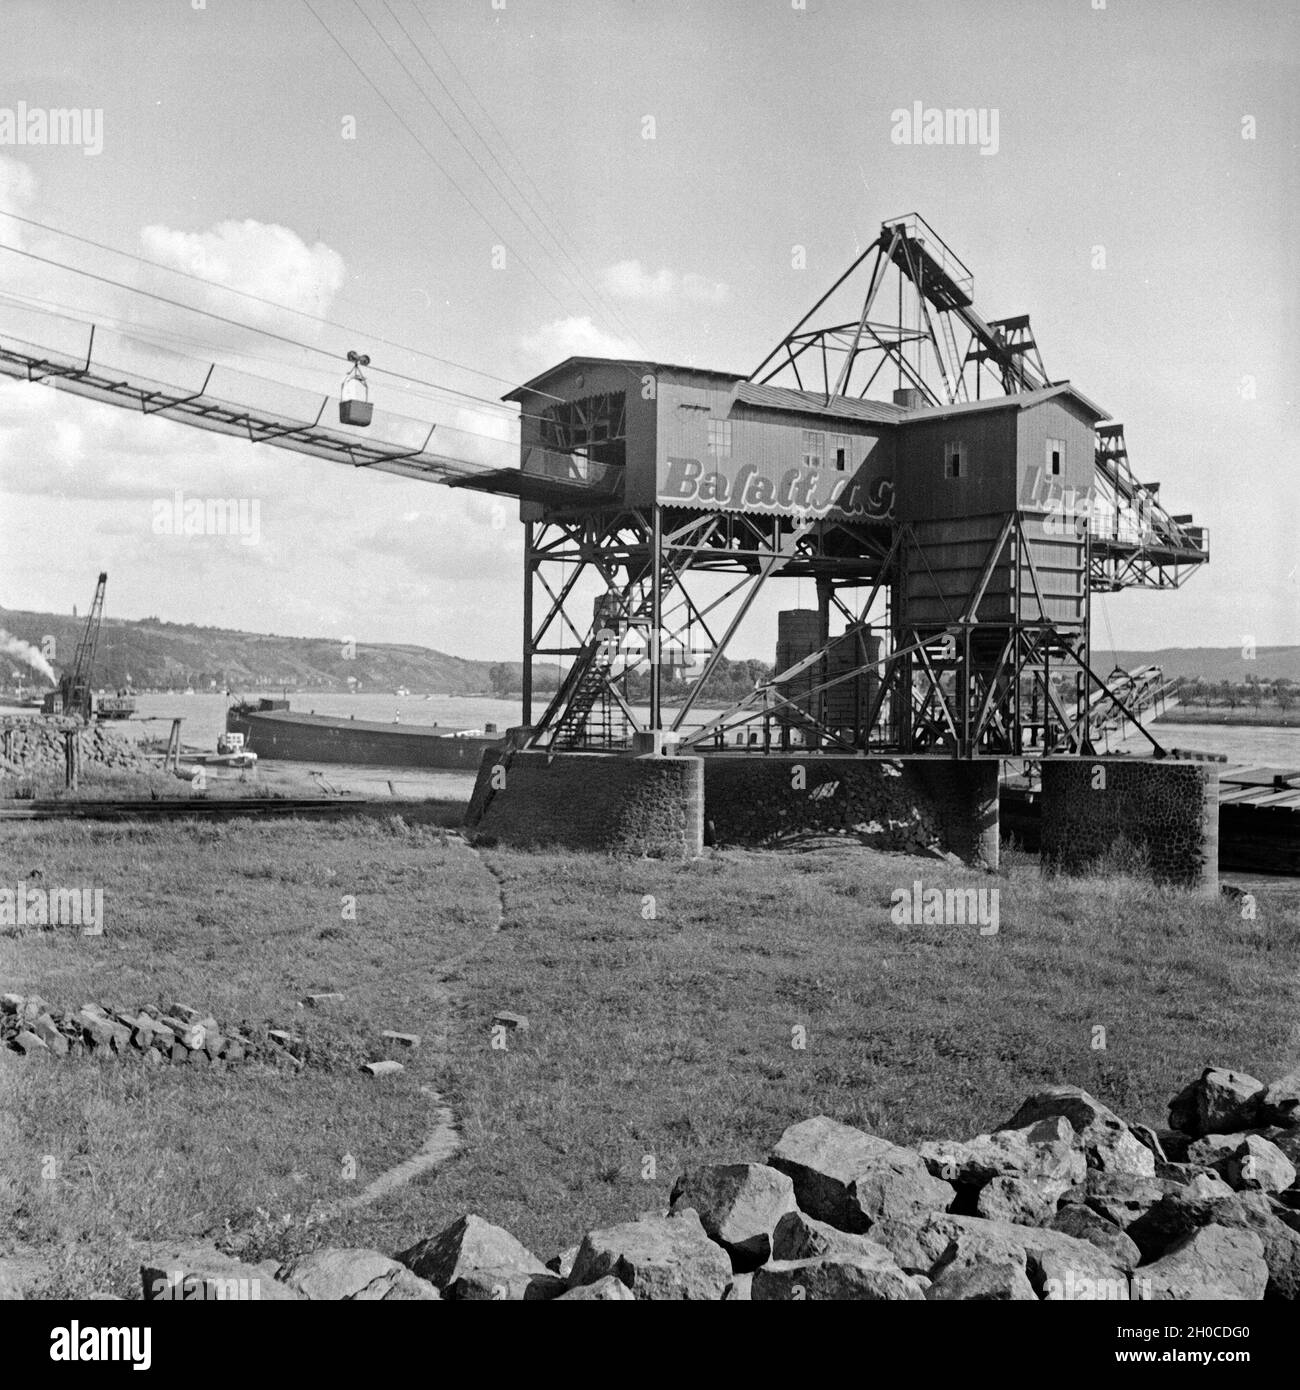 Förderwerk der Basalt AG in Linz am Rhein, Deutschland 1930er Jahre. Headgear of the Basalt AG company at Linz on river Rhine, Germany 1930s. Stock Photo